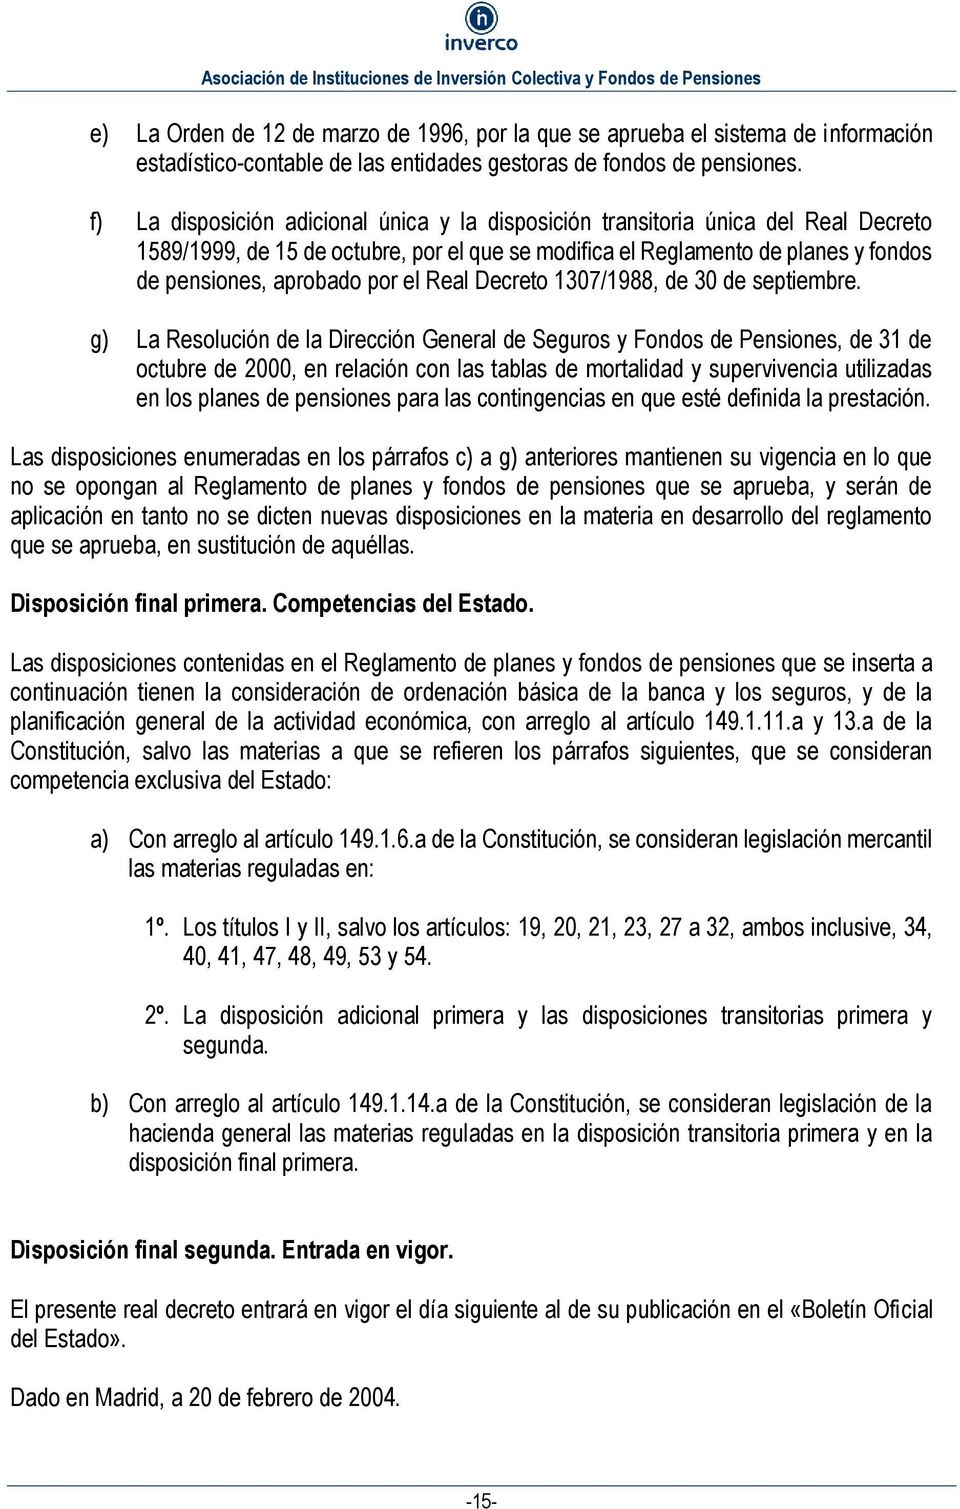 el Real Decreto 1307/1988, de 30 de septiembre.